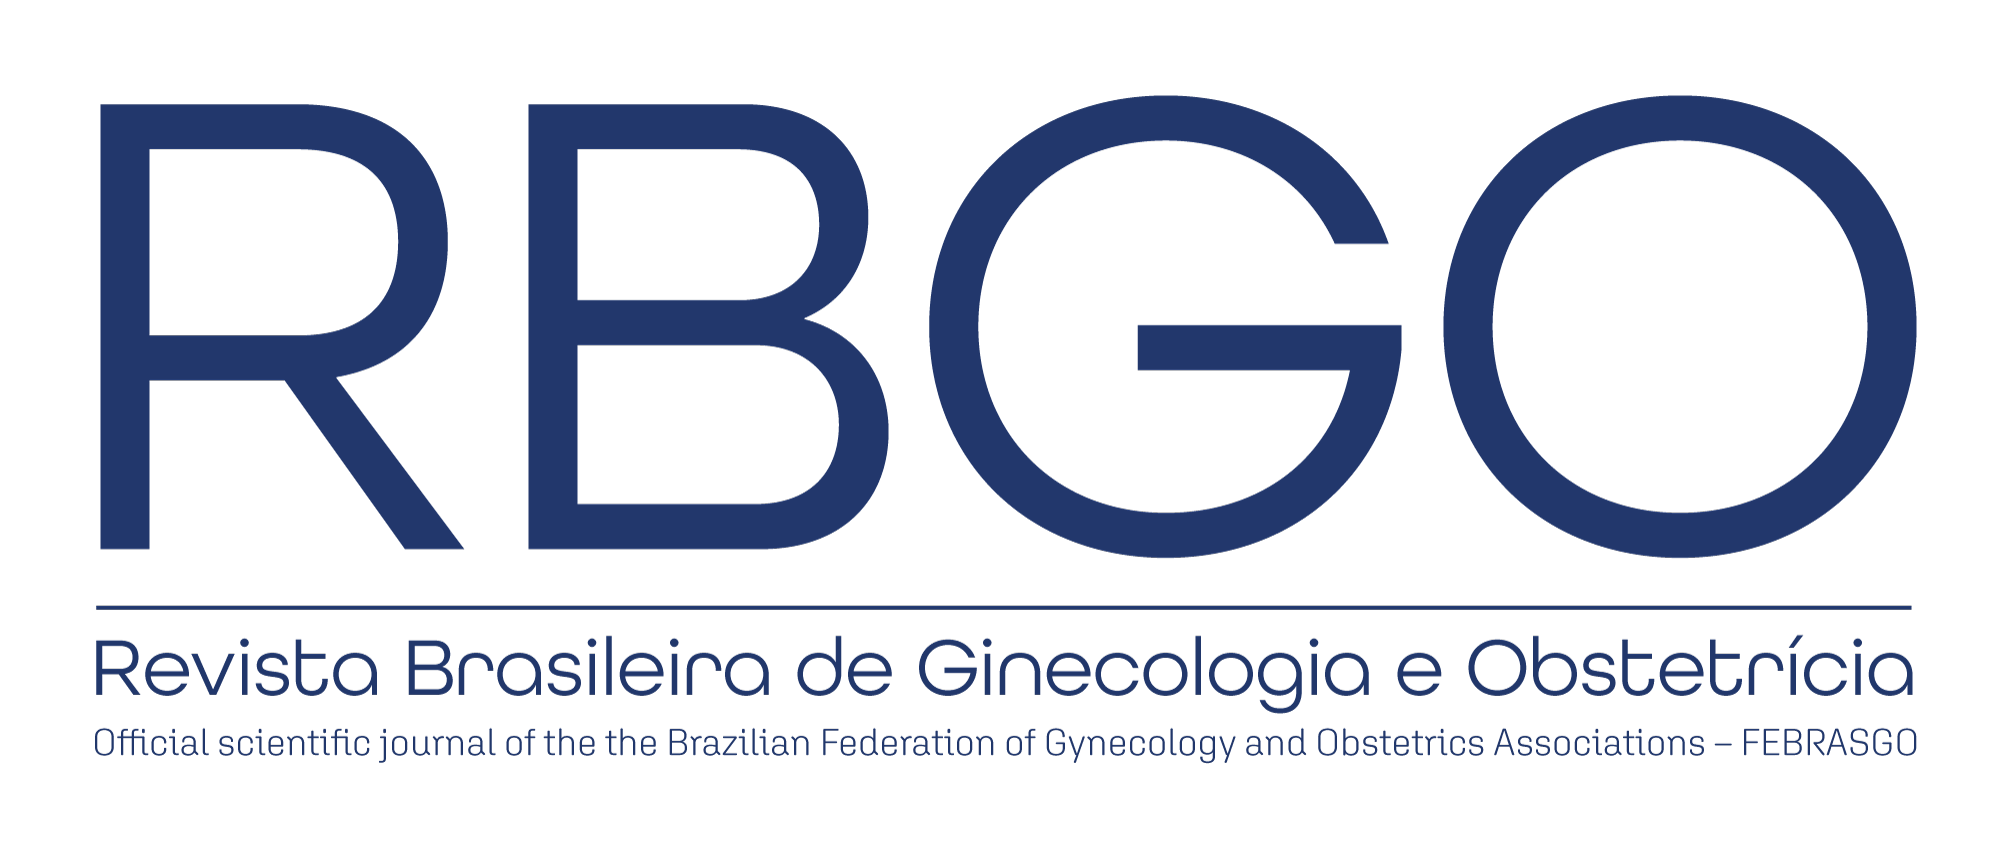 Logomarca do periódico: Revista Brasileira de Ginecologia e Obstetrícia